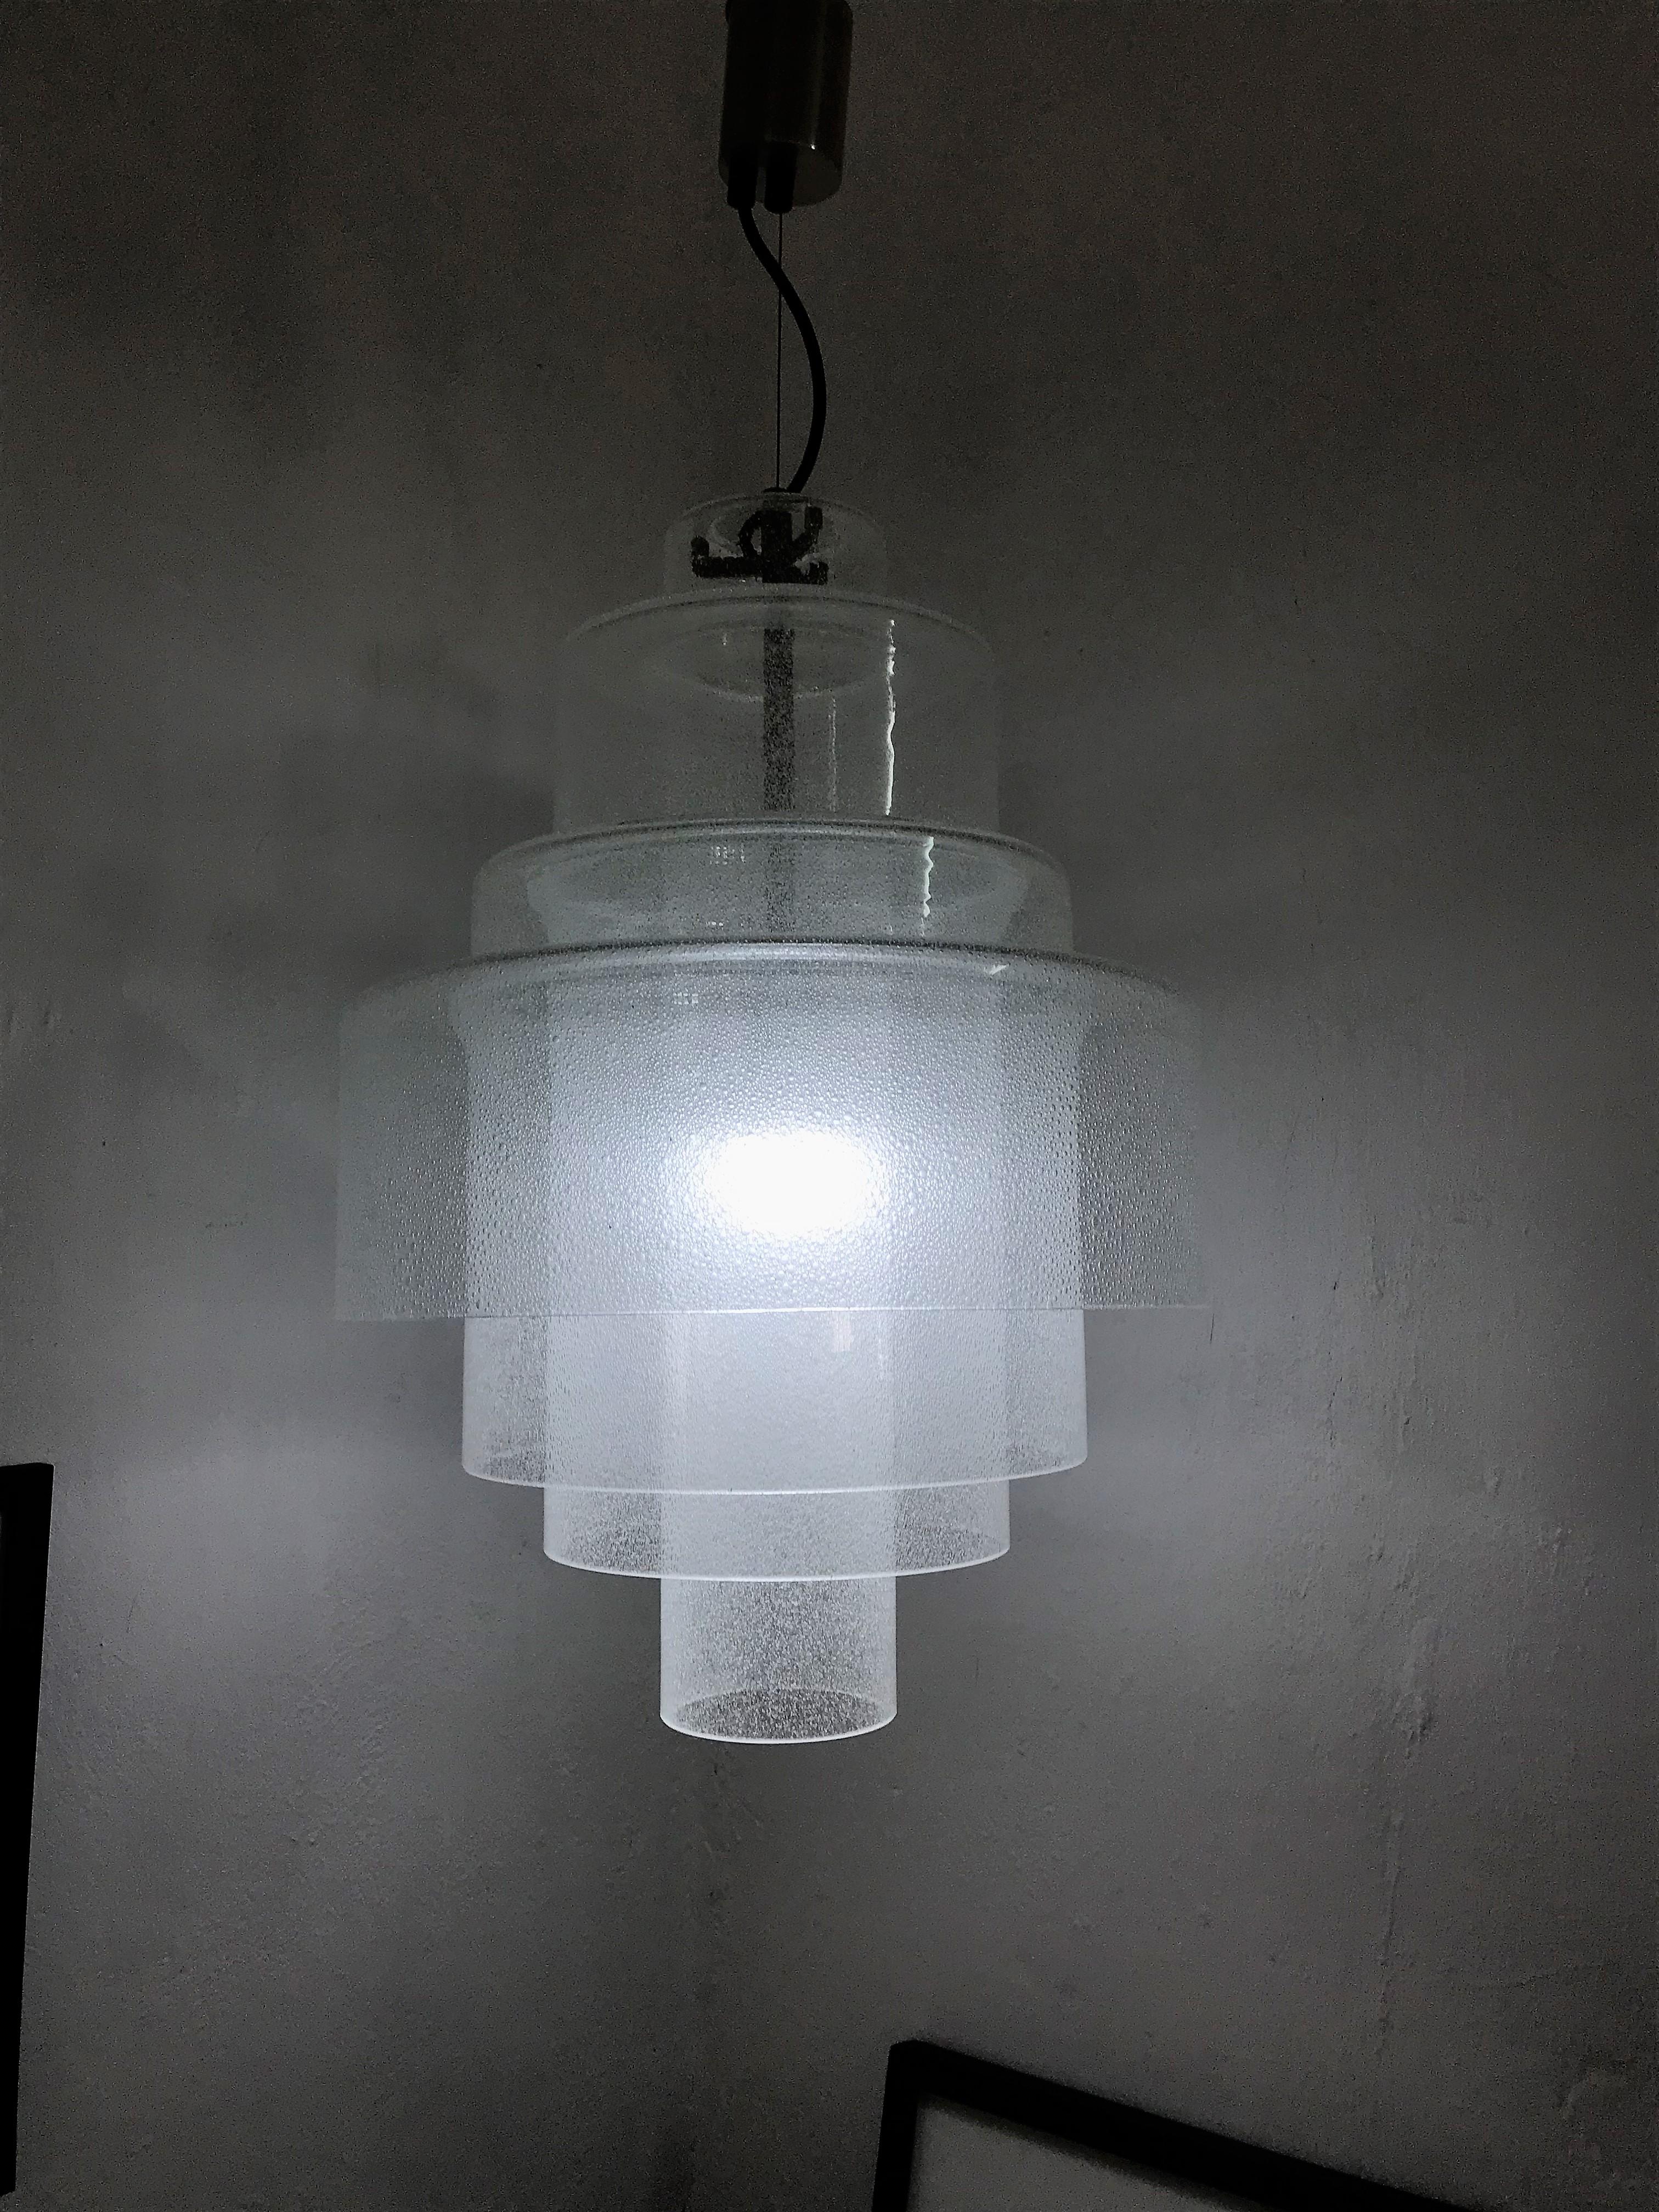 Magnifique et rare lustre-lampe à suspension du milieu du siècle par Mazzega, conçu par Carlo Nason, vers 1960, Murano, Italie.
La lampe seule mesure 21 pouces de haut et a un diamètre de 15 pouces.
Ce lustre est la version large, car il se